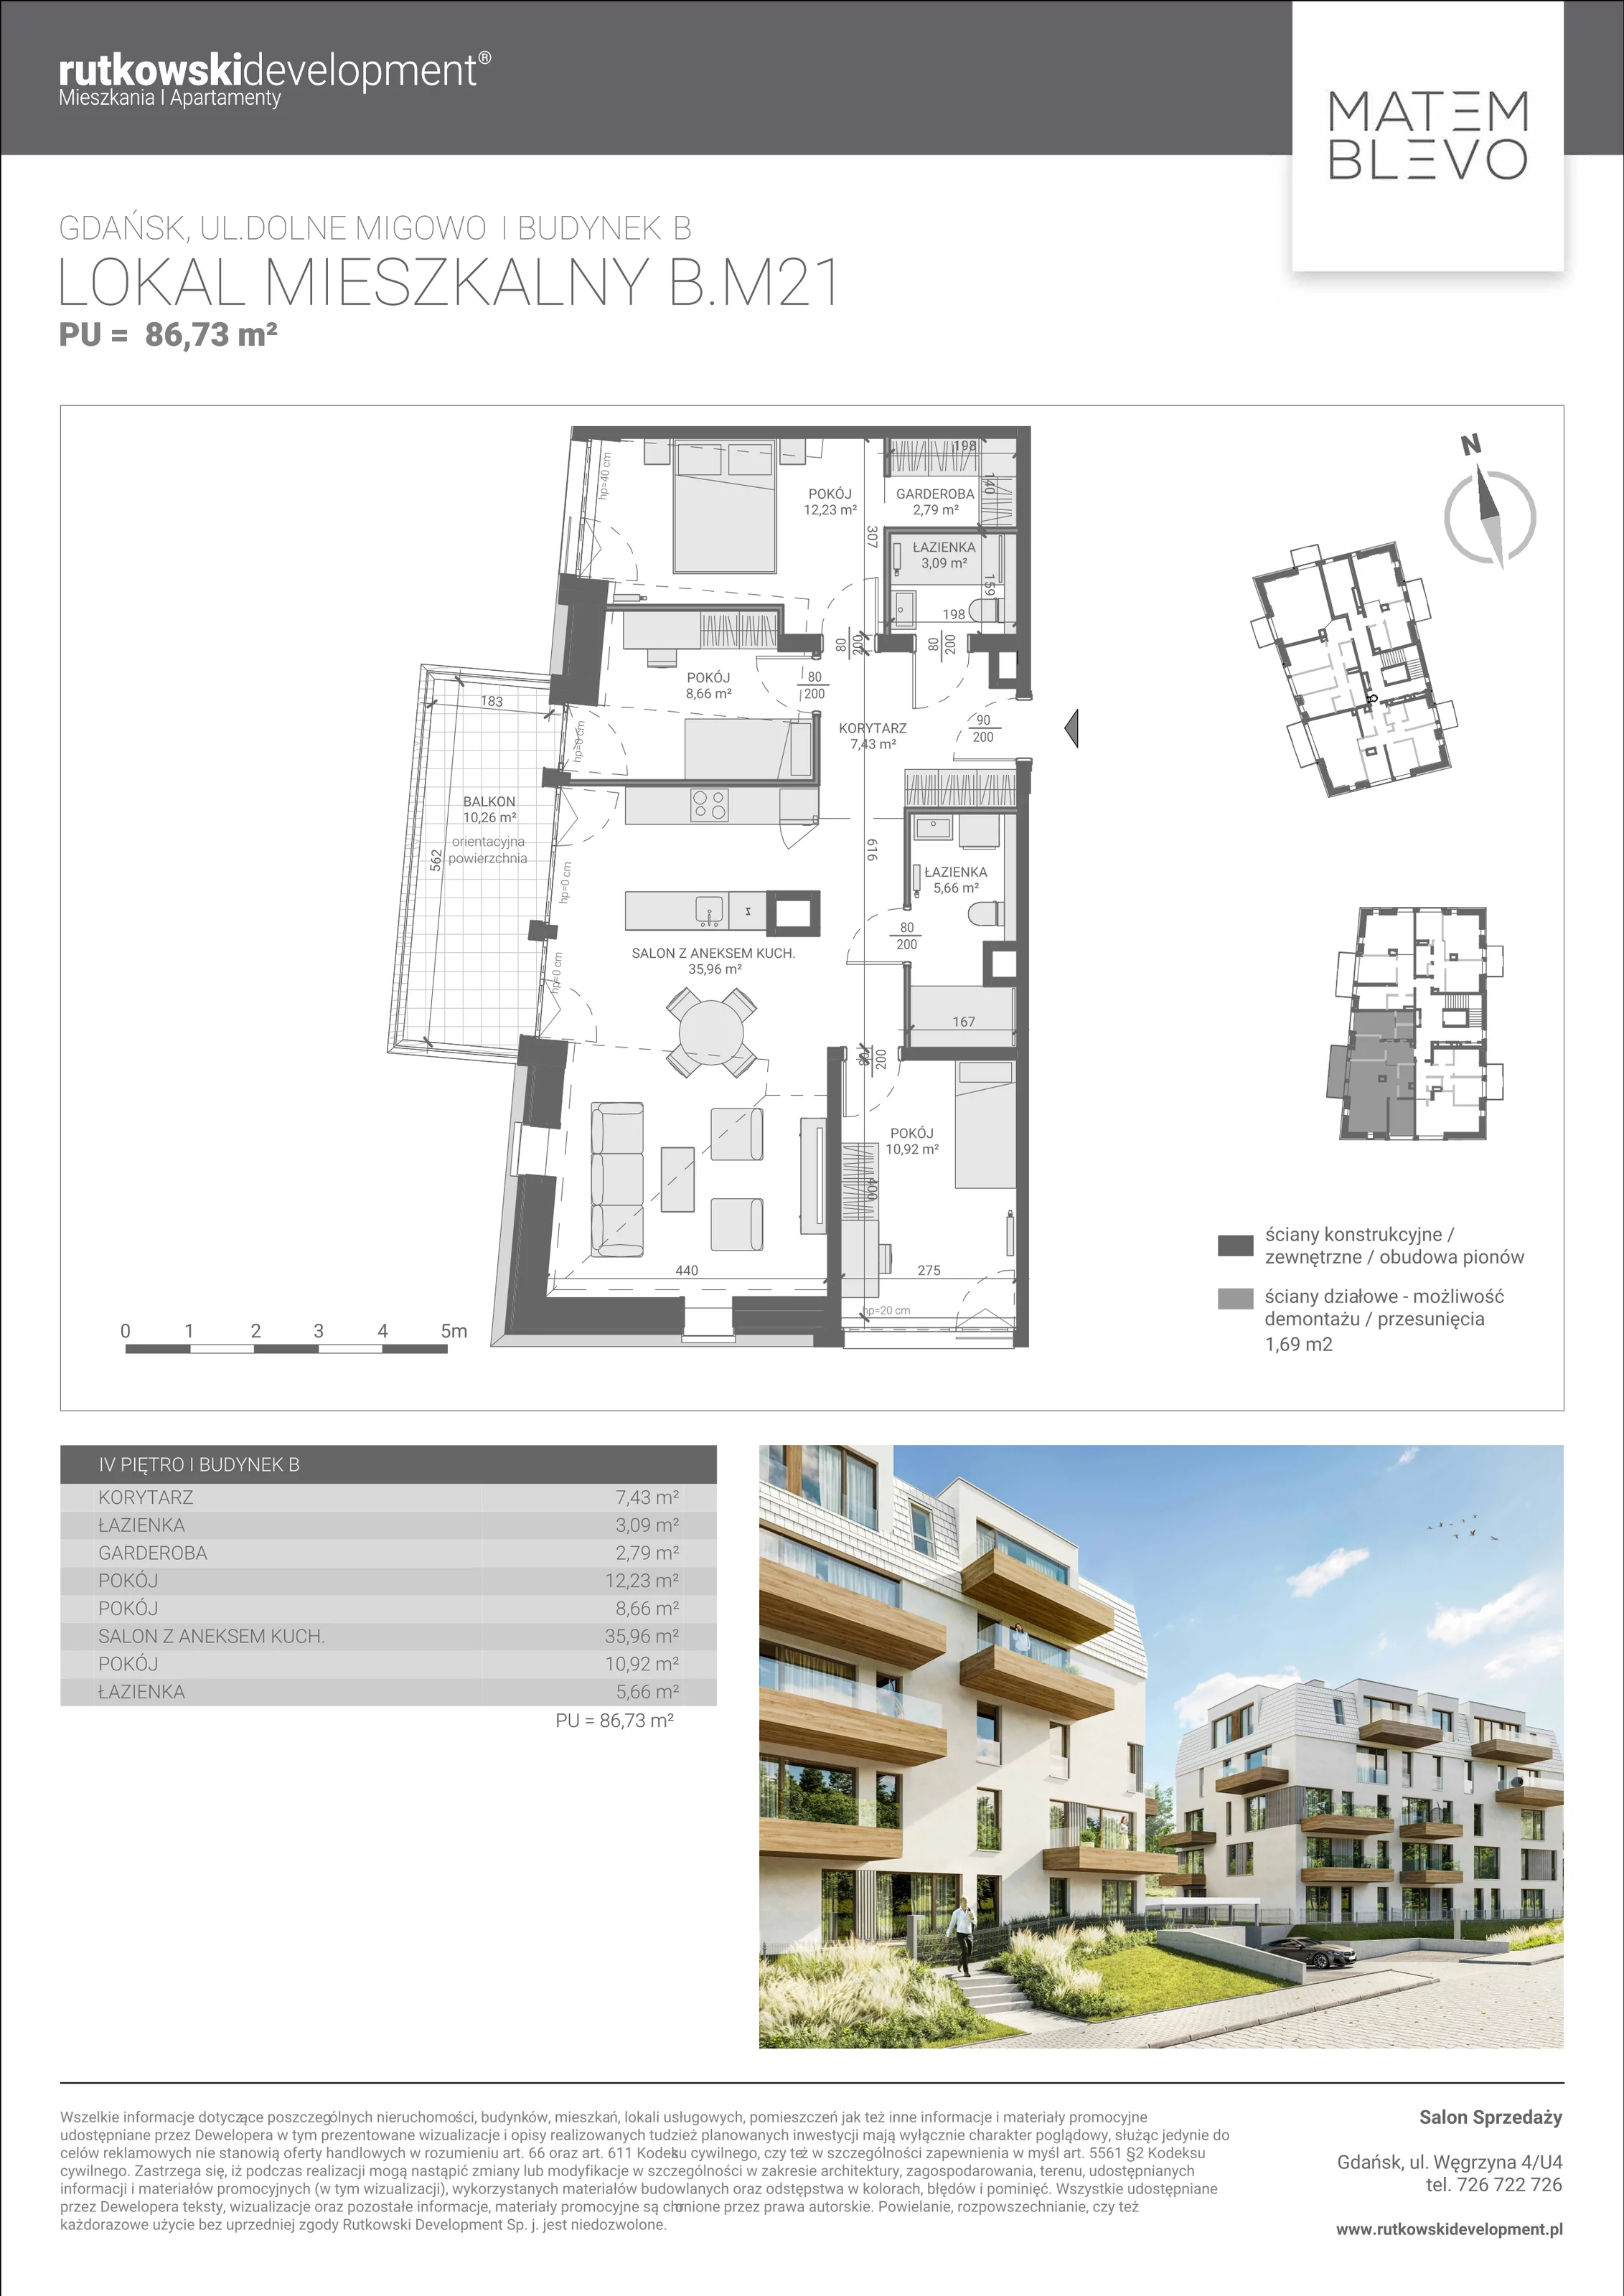 Mieszkanie 86,74 m², piętro 4, oferta nr B.M21, Matemblevo, Gdańsk, Brętowo, ul. Dolne Migowo 23 D